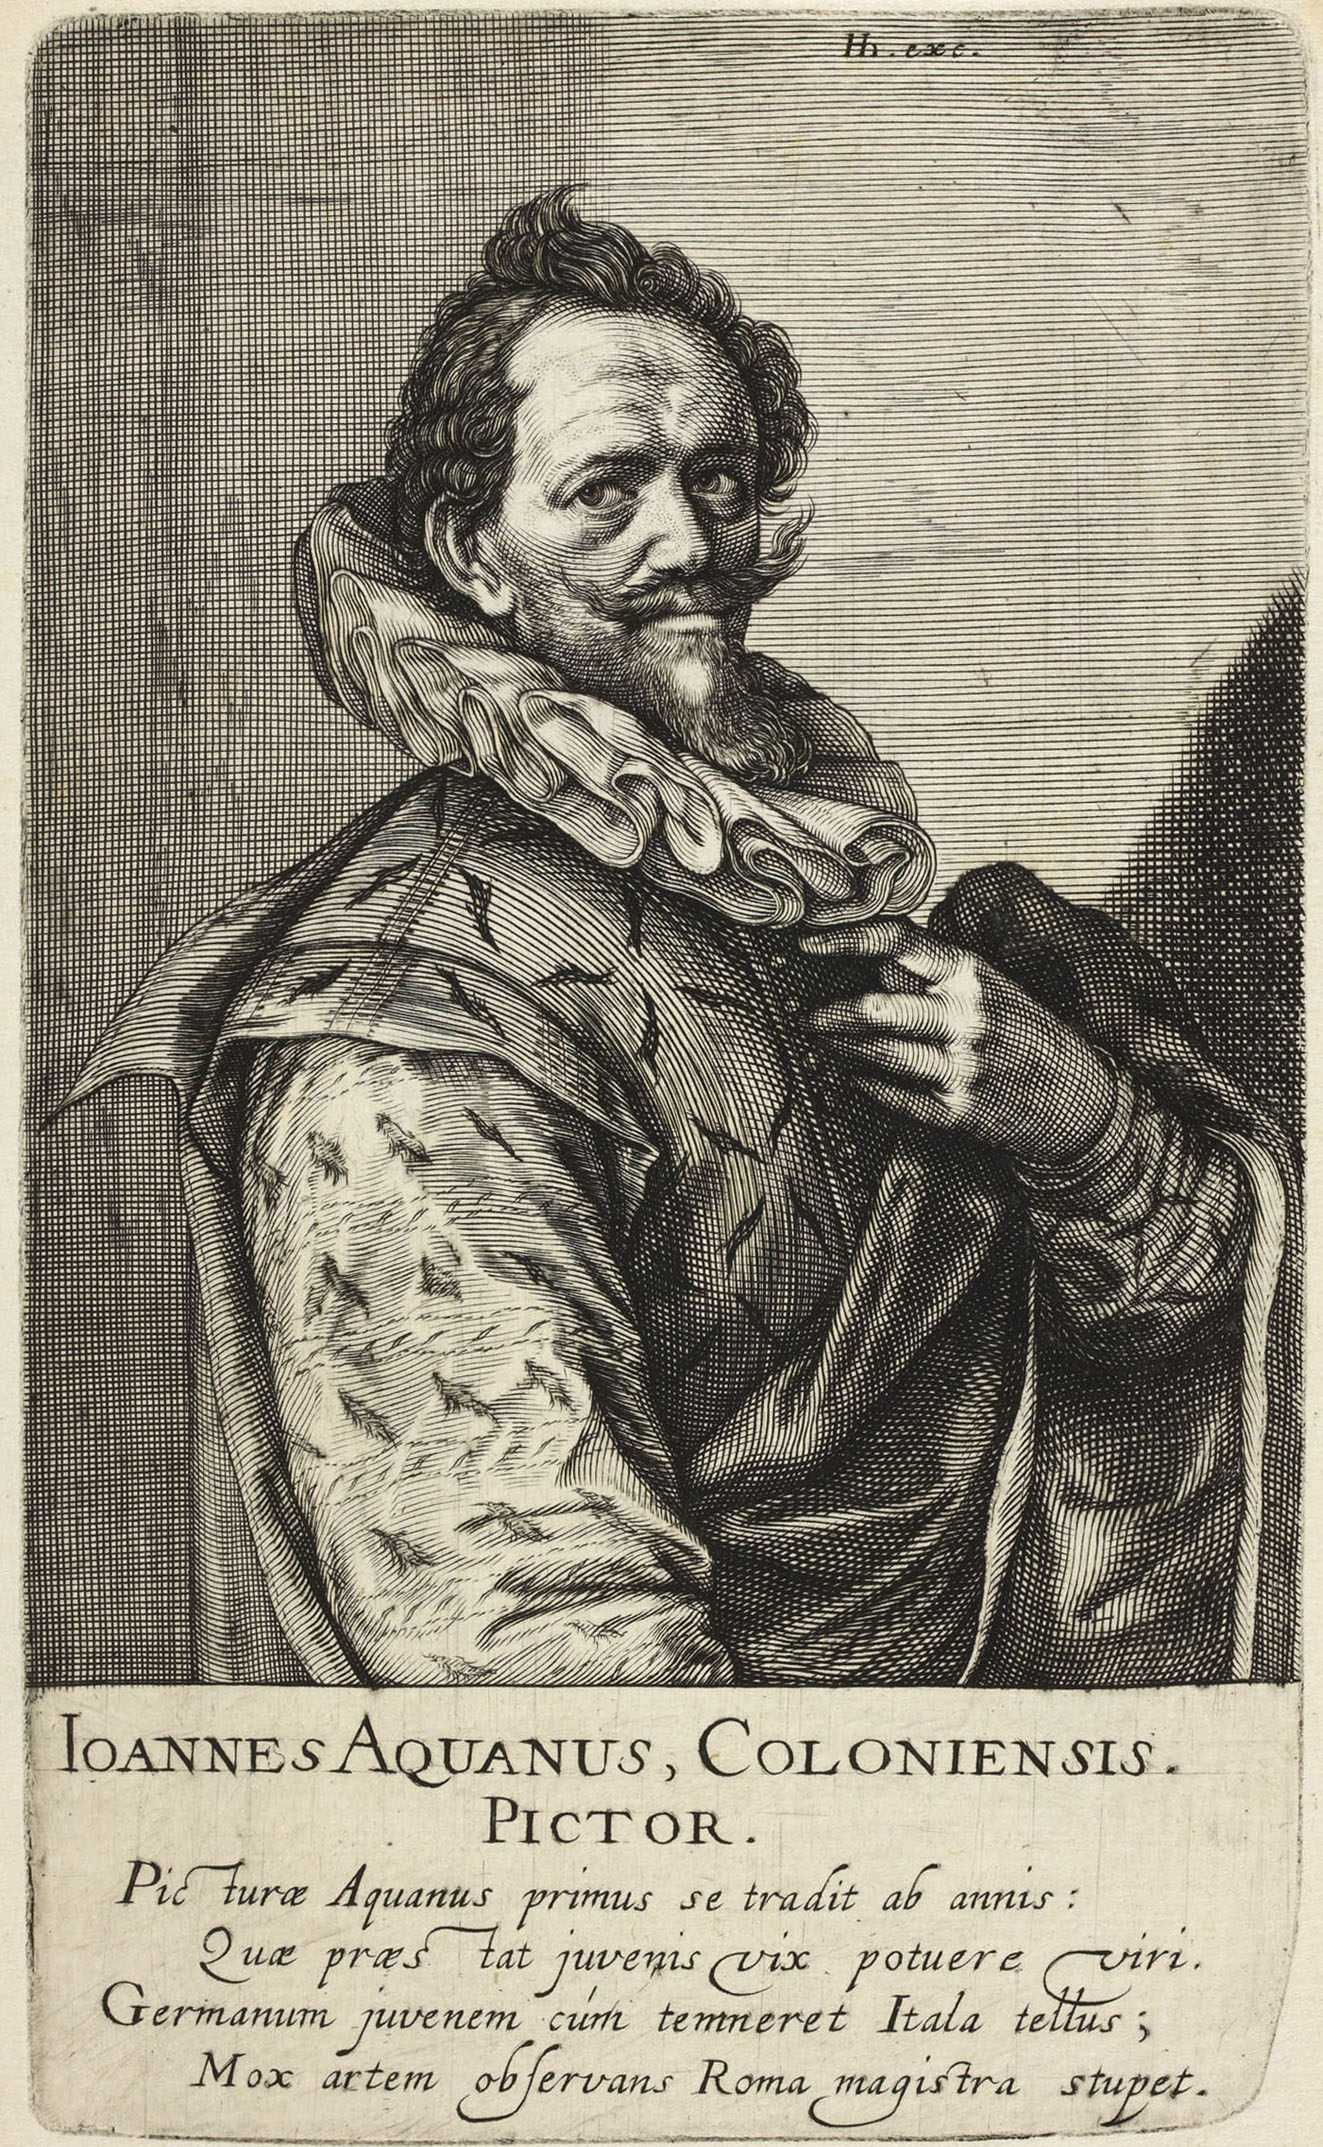 Hans von Aachen engraving